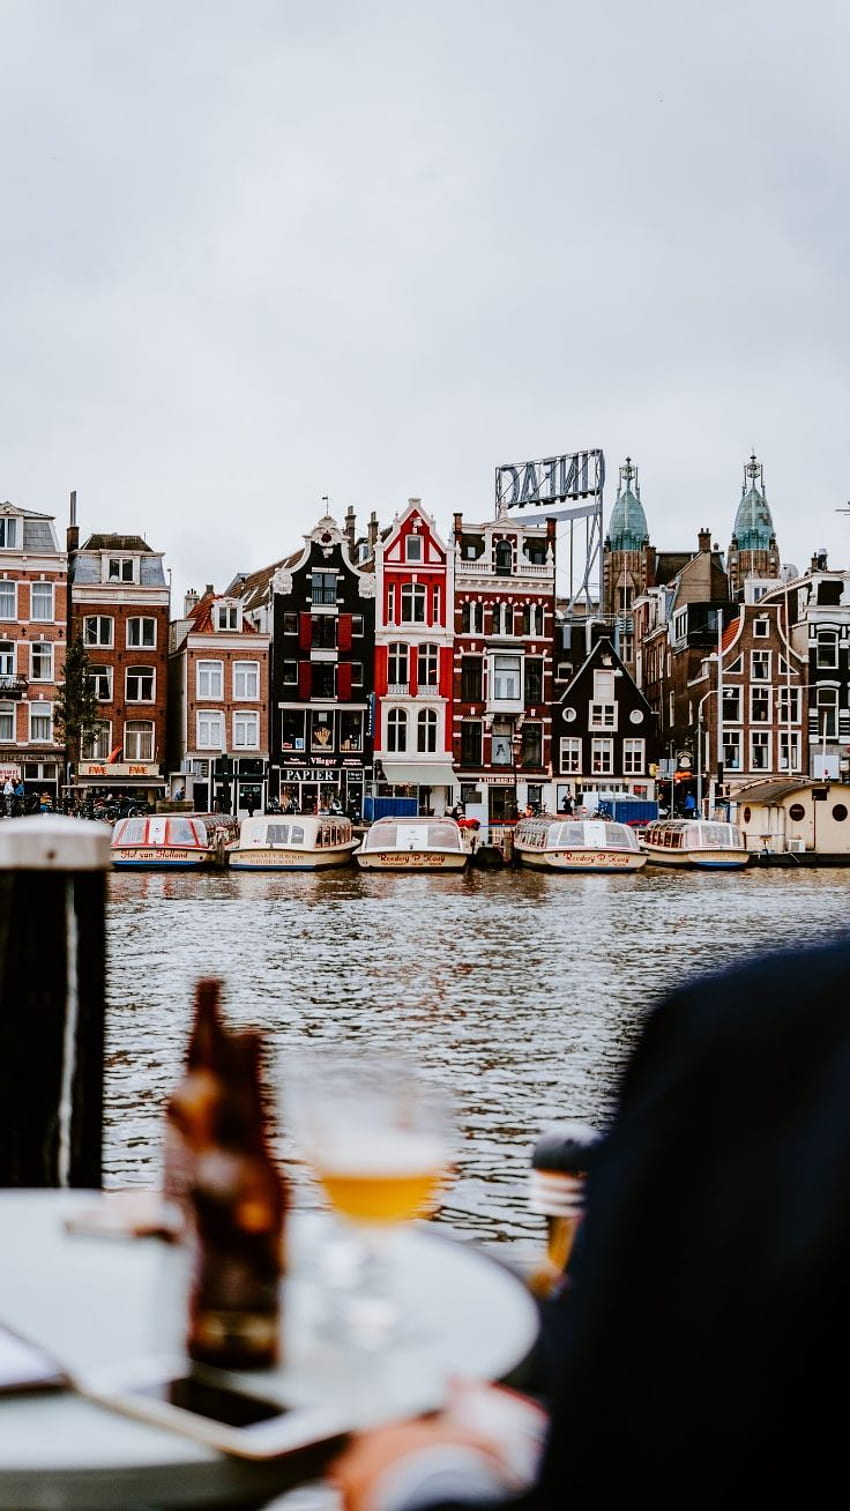 iPhone-Amsterdam. Tulip & Perjalanan, Musim Semi Amsterdam wallpaper ponsel HD